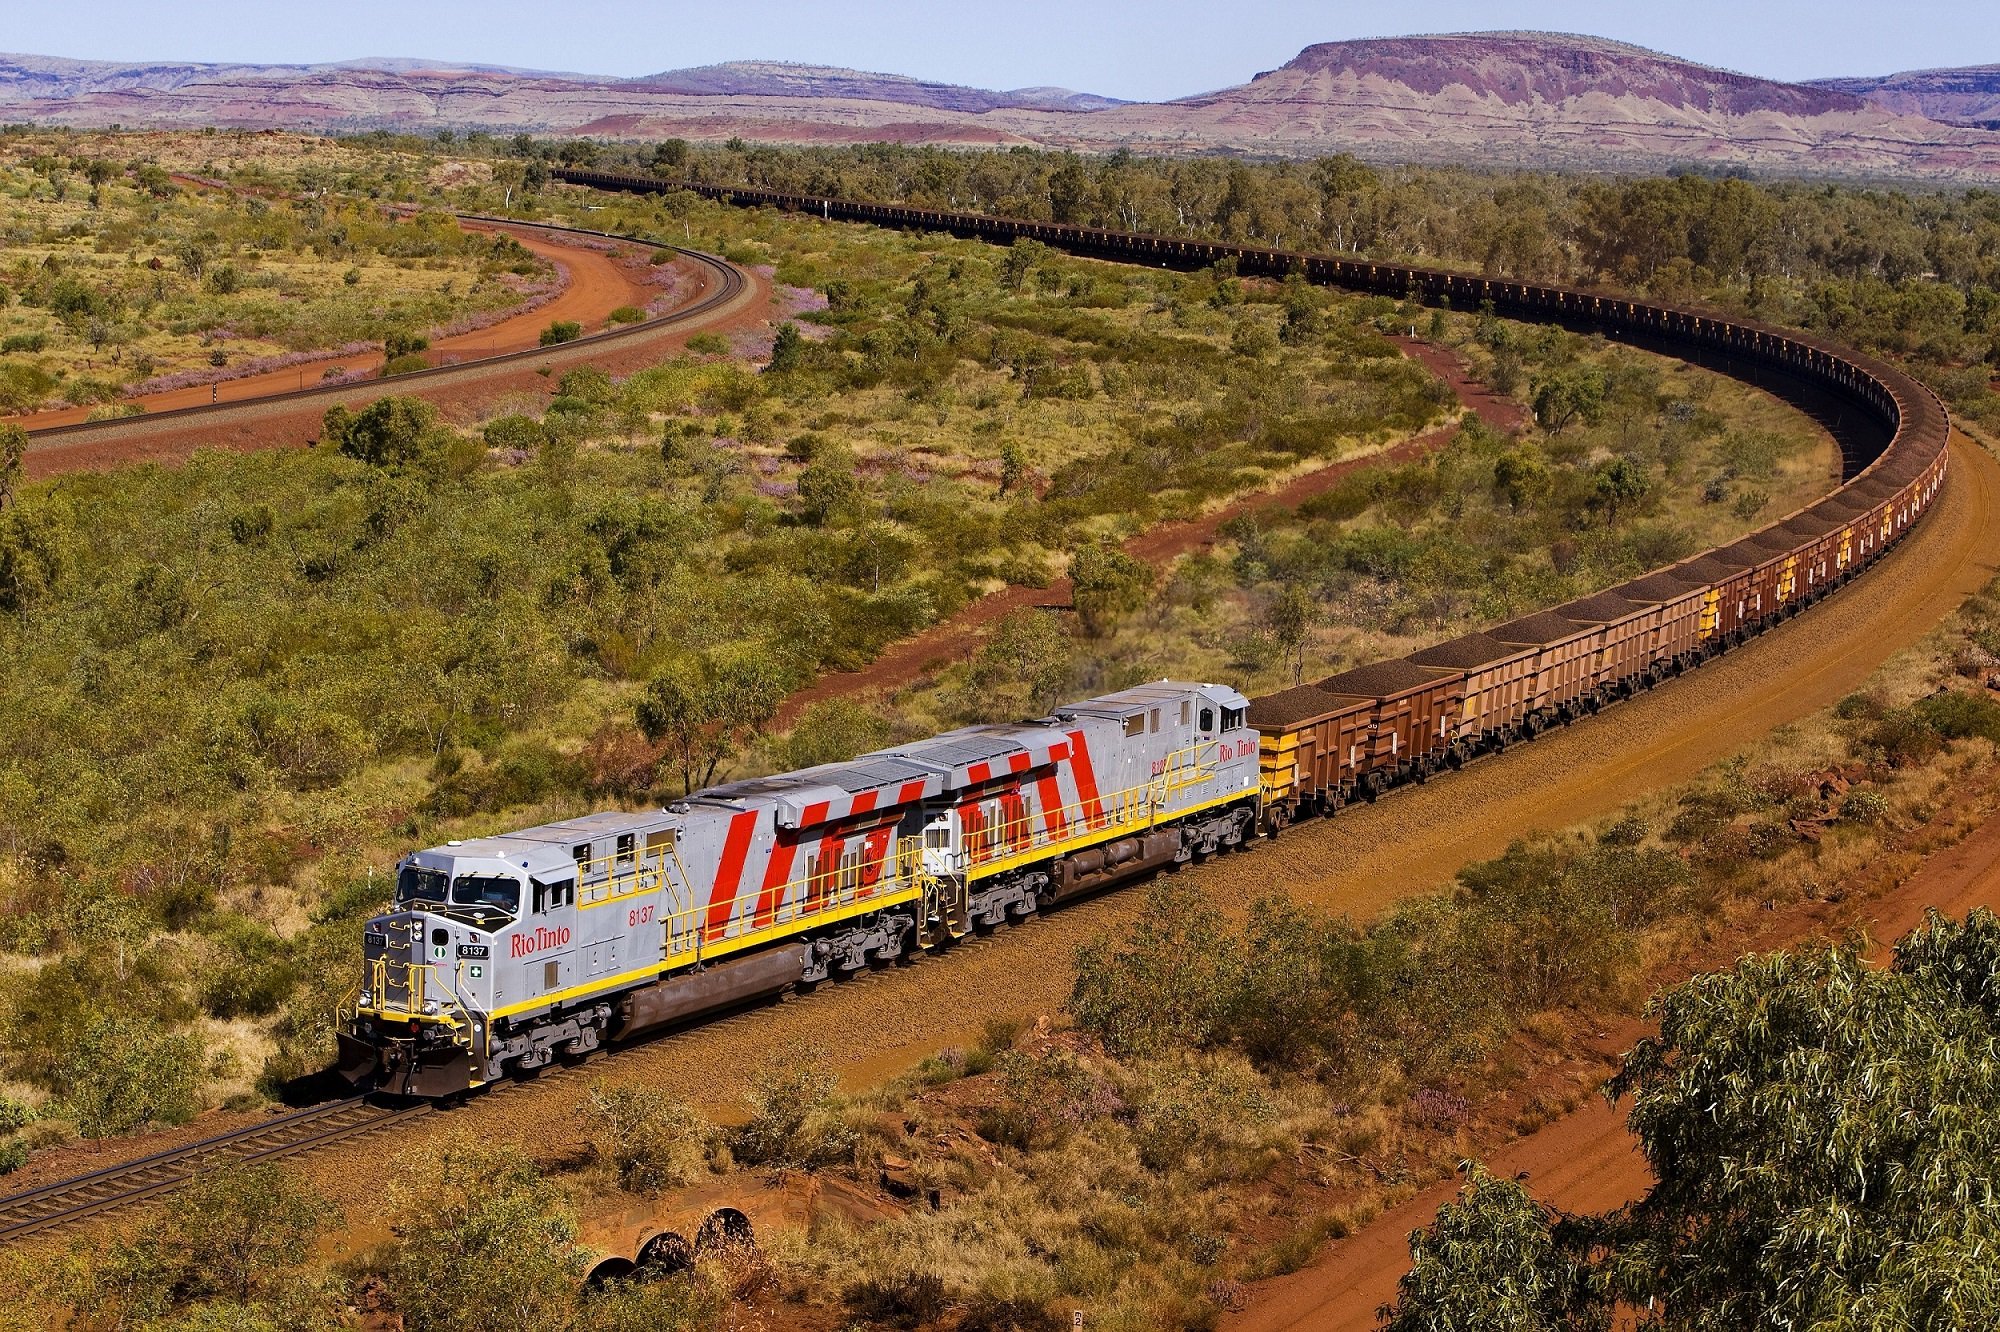 Длинные вагоны поездов. Рио-тинто в Австралии. Самый длинный поезд в мире 682 вагона. Поезд Rio Tinto (Австралия). Поезд горнодобывающей компании BHP Billiton, Австралия.